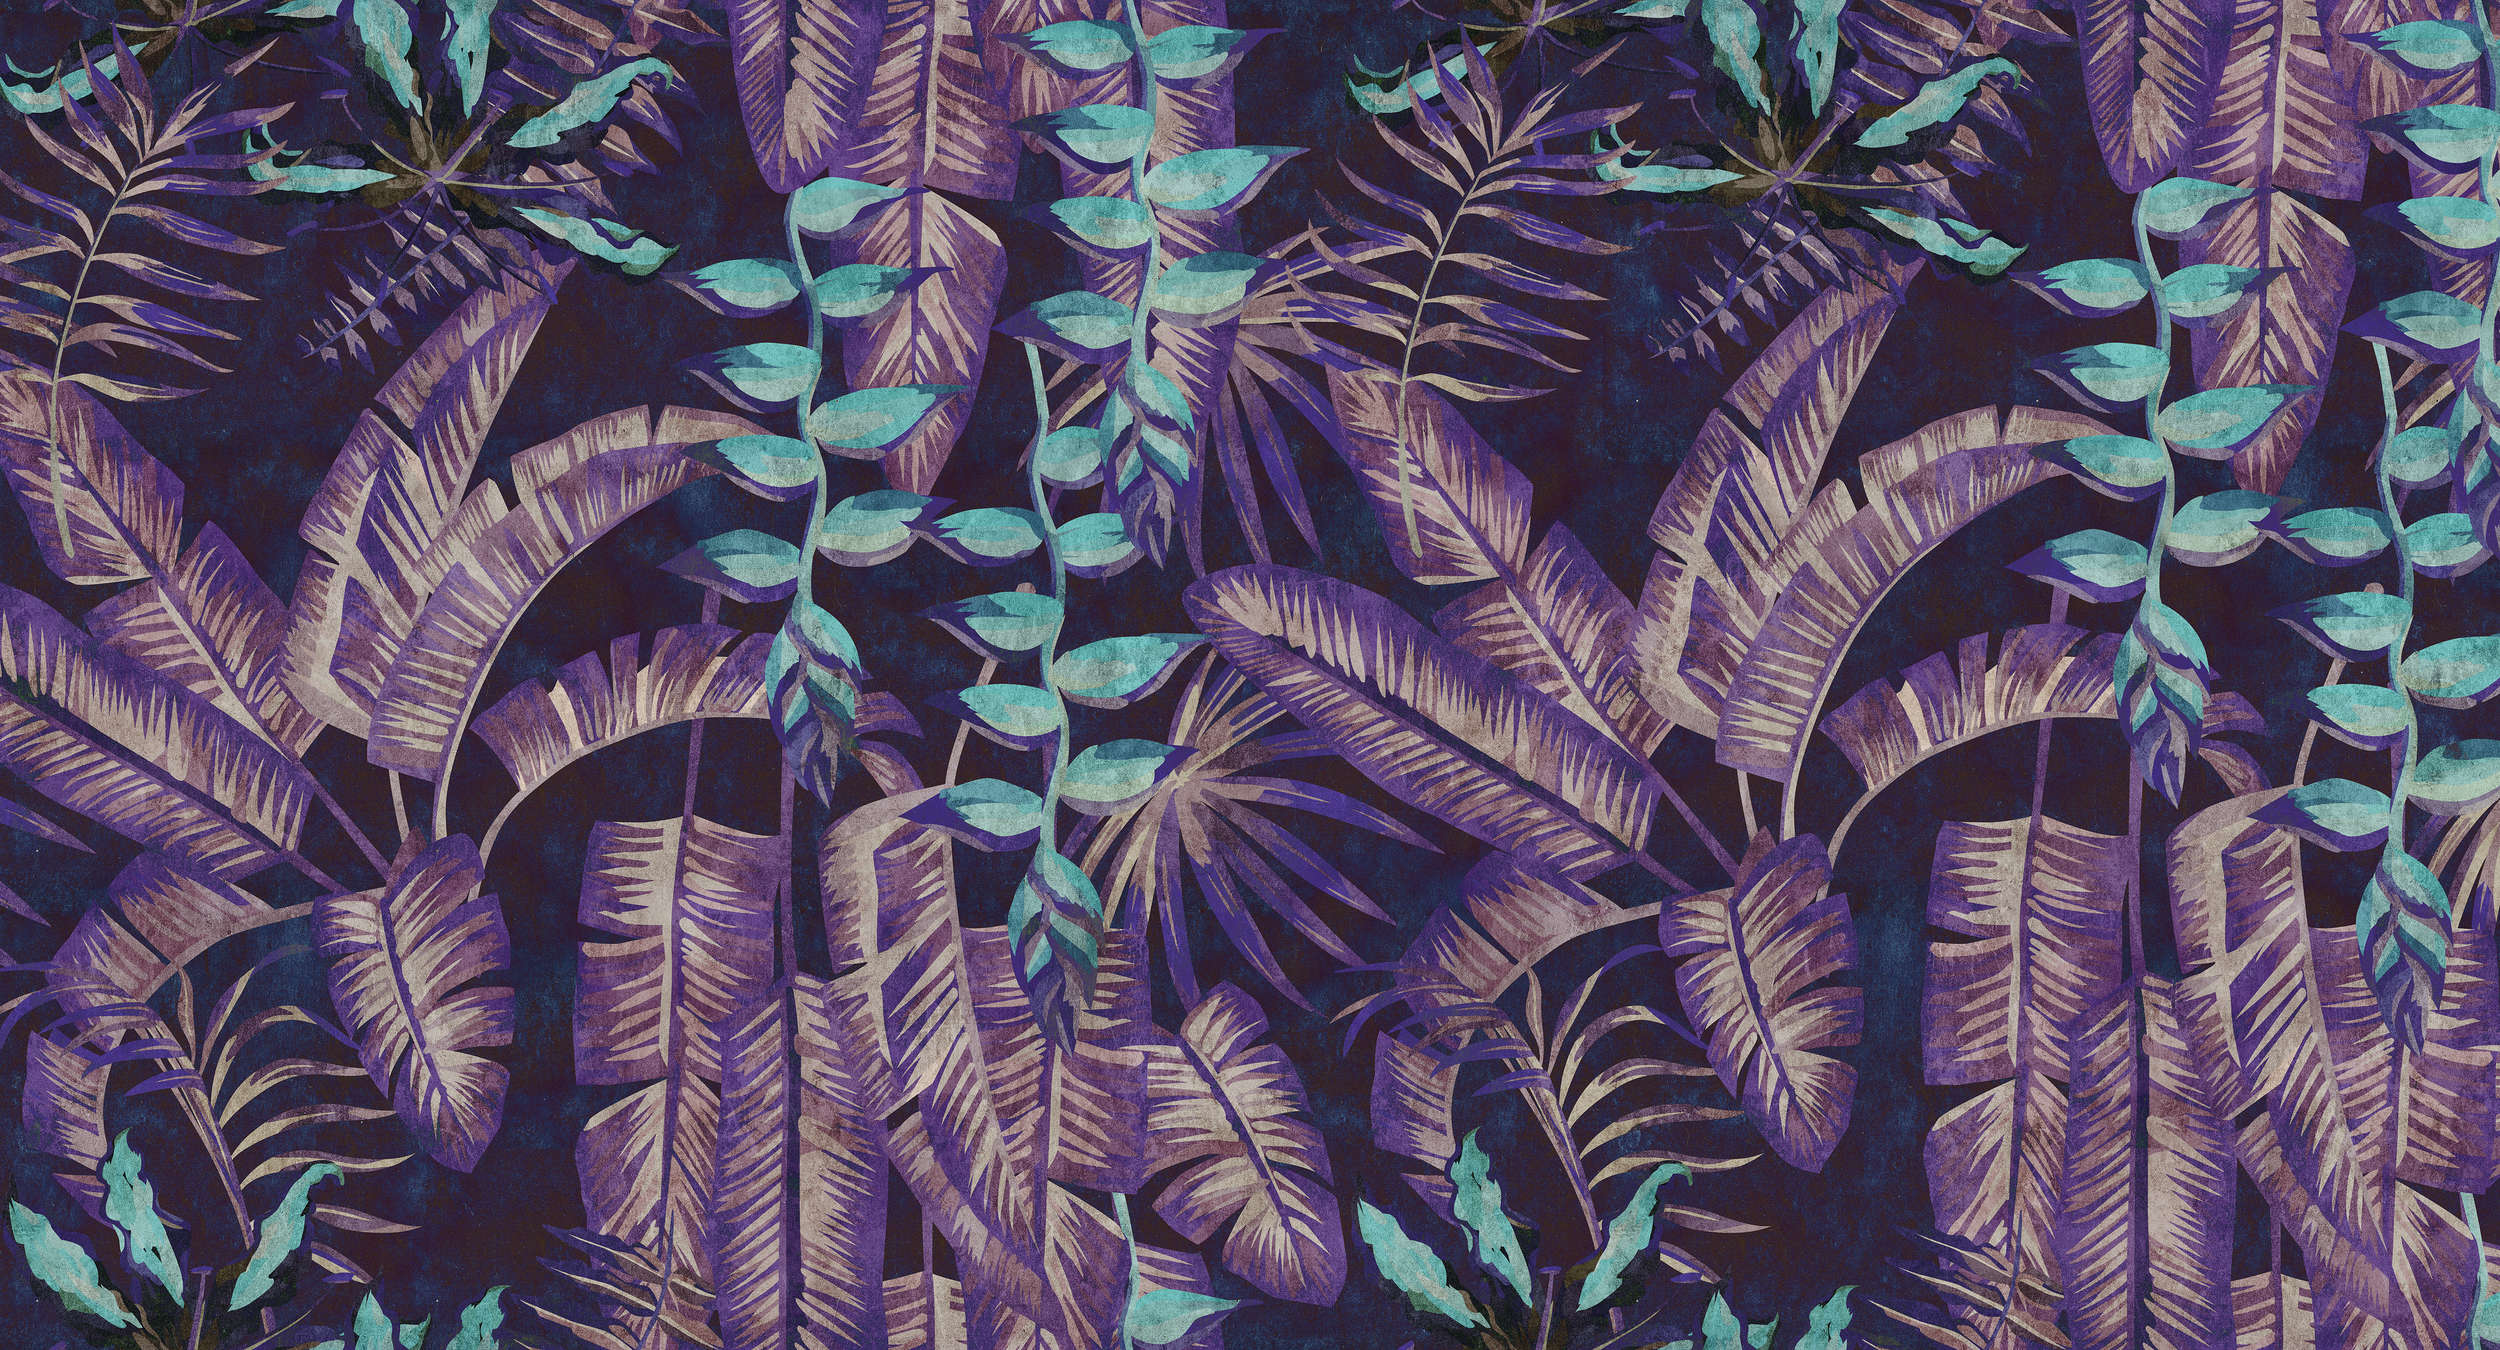             Tropicana 6 - Digitaldrucktapete in Löschpapier Struktur mit Dschungelmotiv – Türkis, Violett | Perlmutt Glattvlies
        